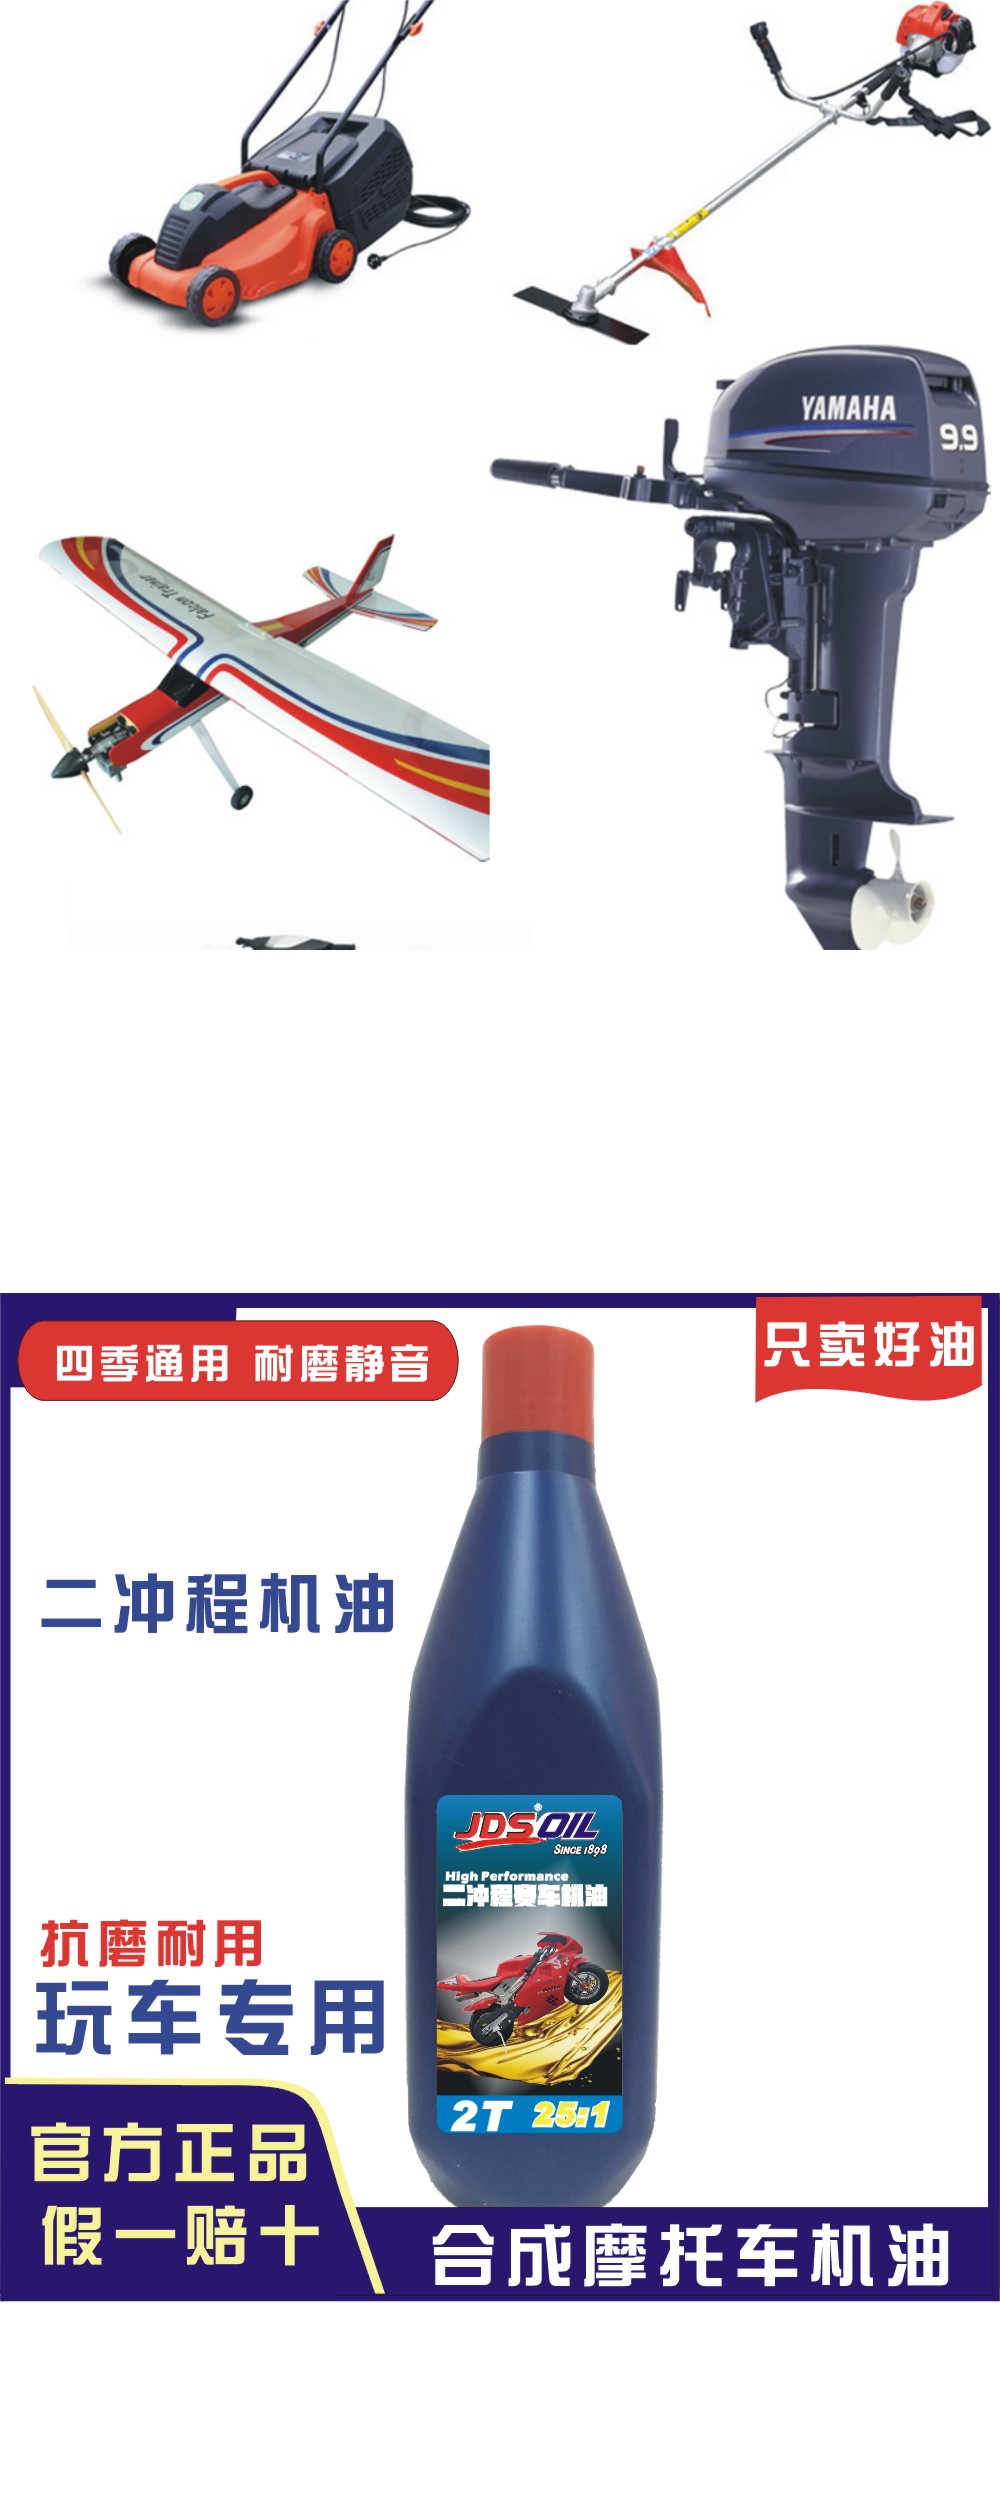 广东摩托润滑油供应长期稳定 广东摩托润滑油哪家好